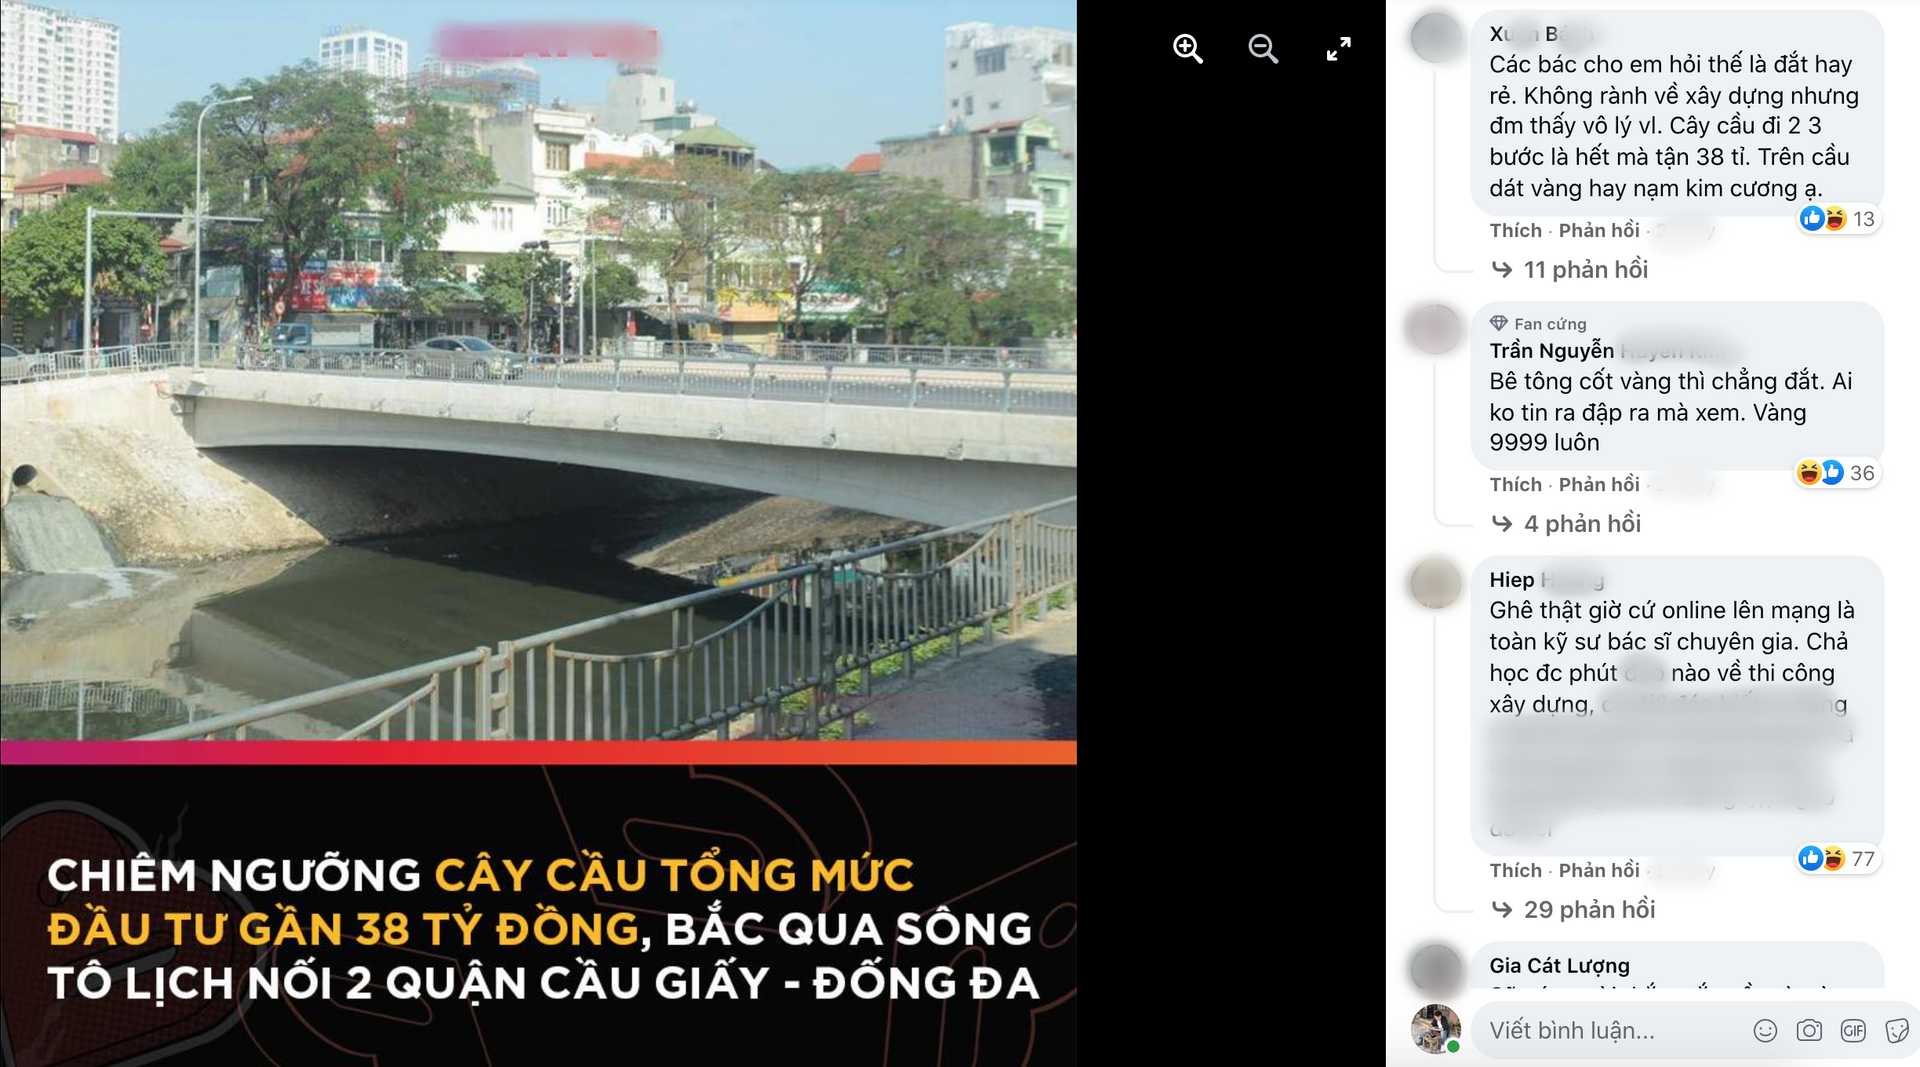 Tranh cãi nảy lửa về cây cầu dài 36 m ngốn 38 tỷ đồng ở Hà Nội - 1